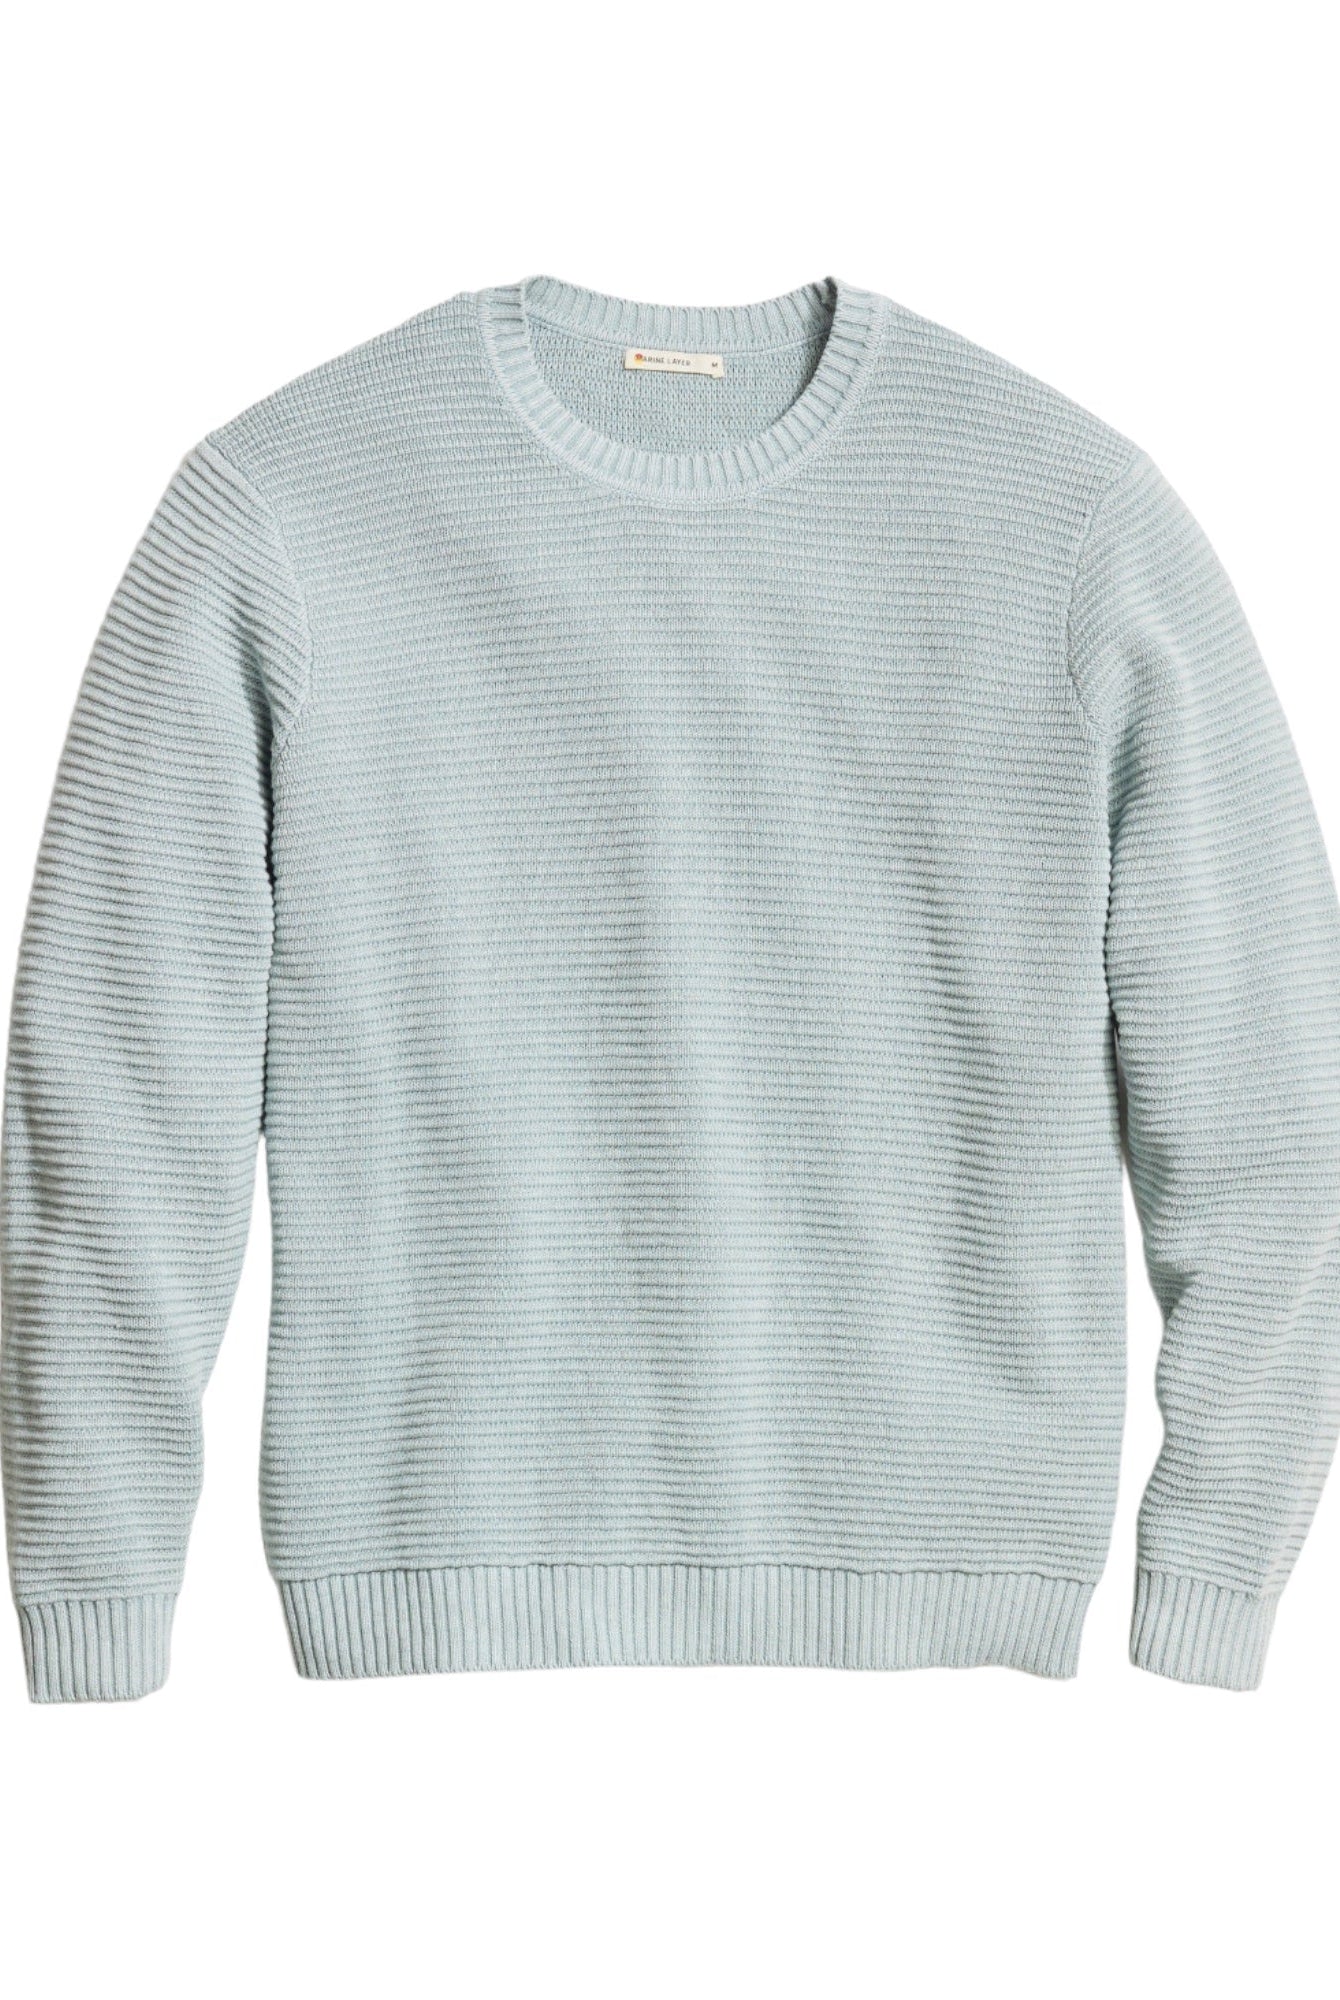 Garment Dye Crew Sweater - Final Sale - Endless Waves